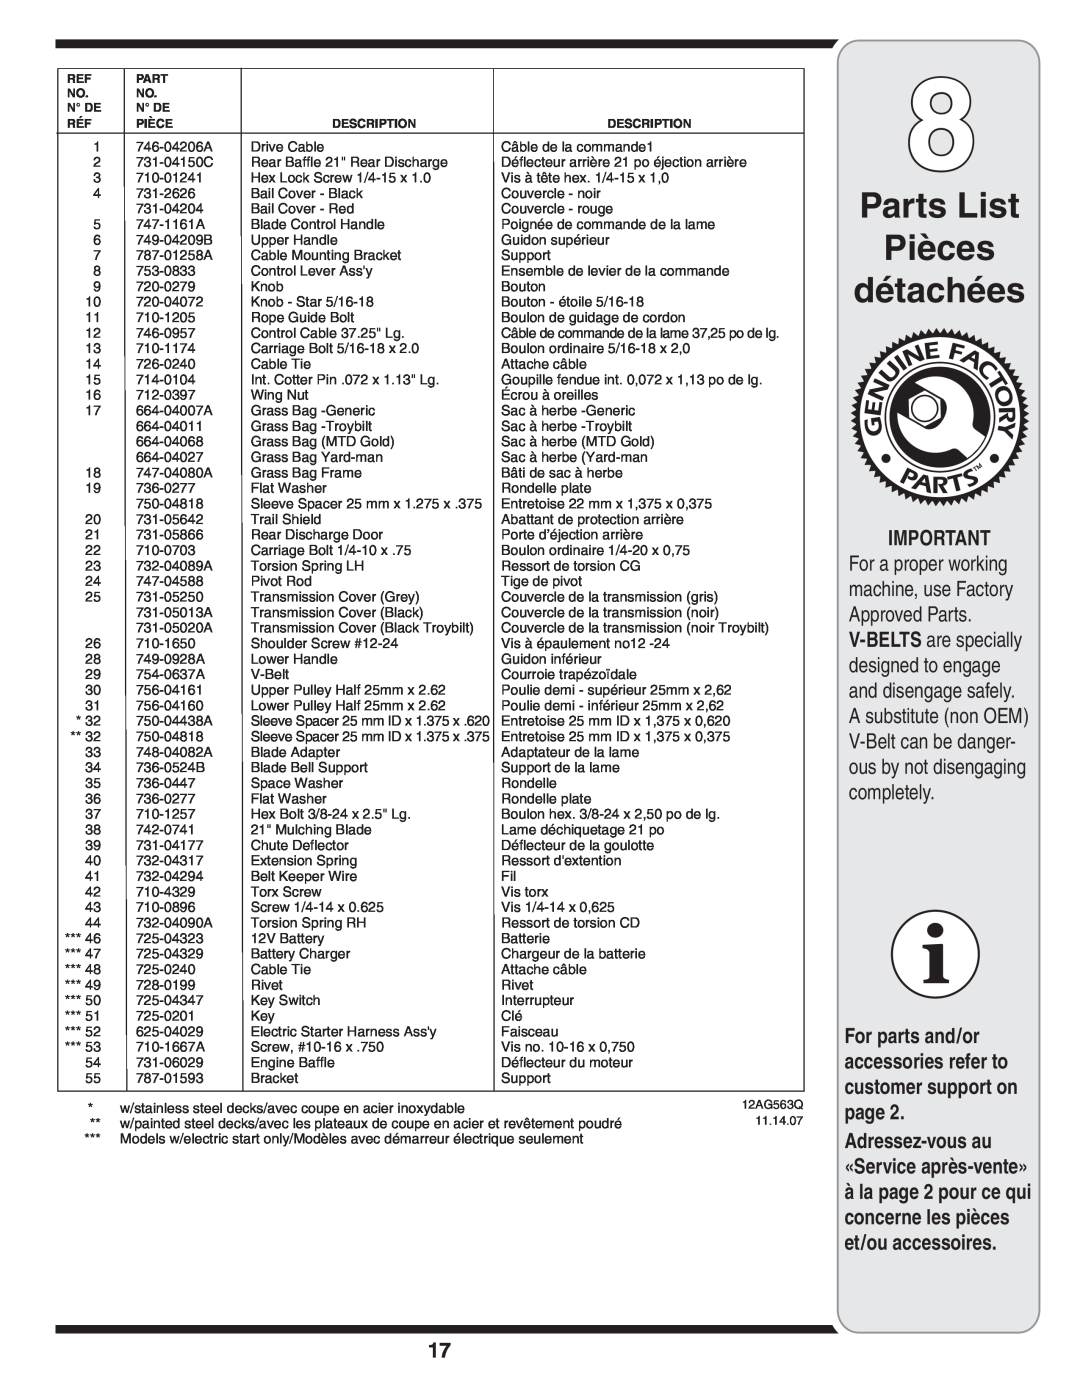 MTD 500 Series warranty Parts List Pièces détachées, Adressez-vous au «Service après-vente», 12AG563Q, 11.14.07 